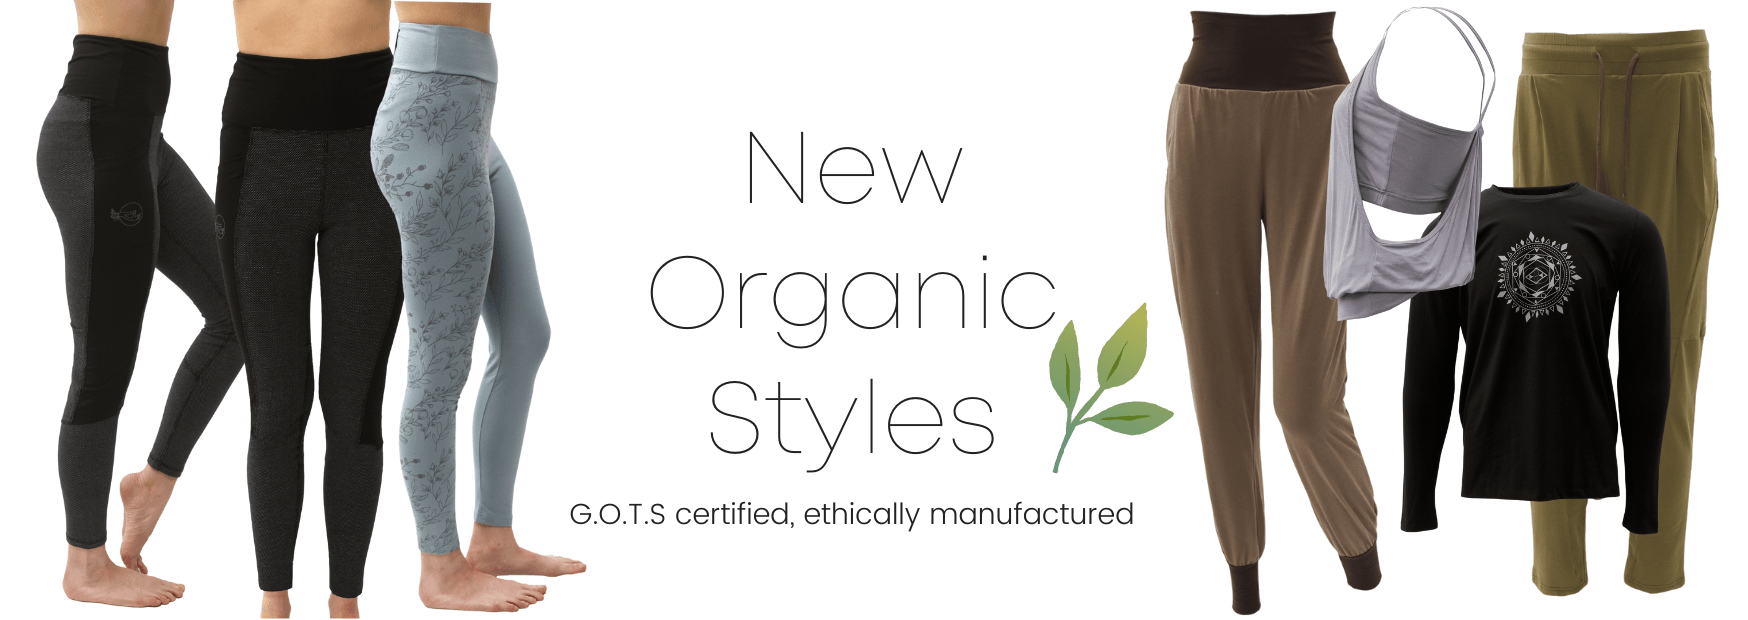 New Organic Styles